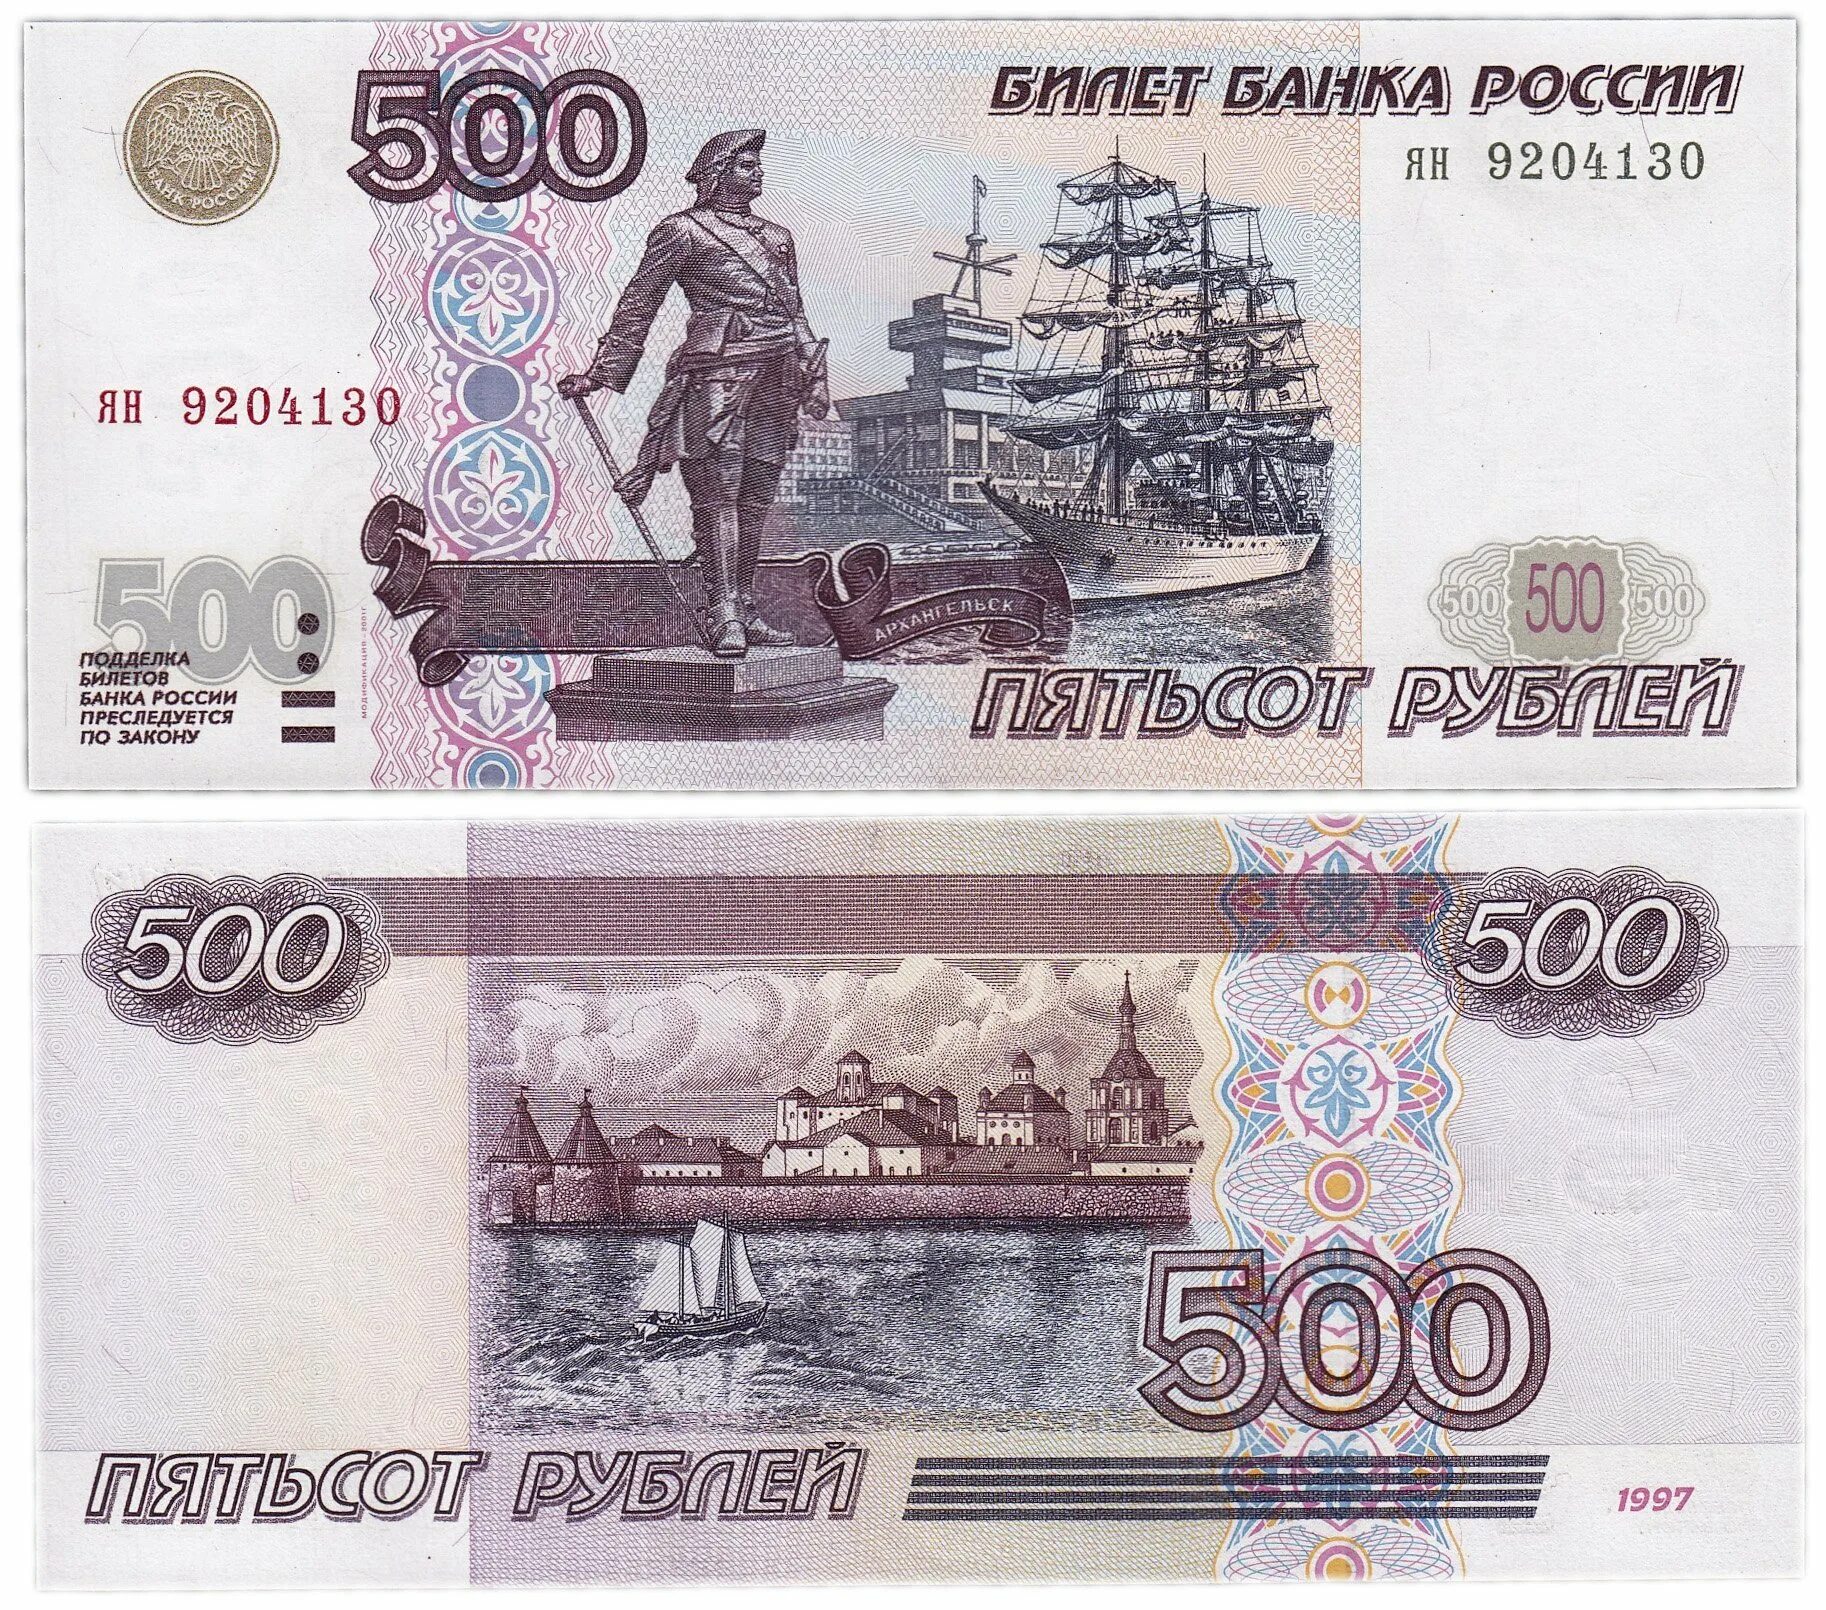 500 Рублей 1997 г. модификация 2001 г. Российские 500 рублей 1997. Купюра 500 рублей 1997 года. 500 Рублей 1997 года без модификации.